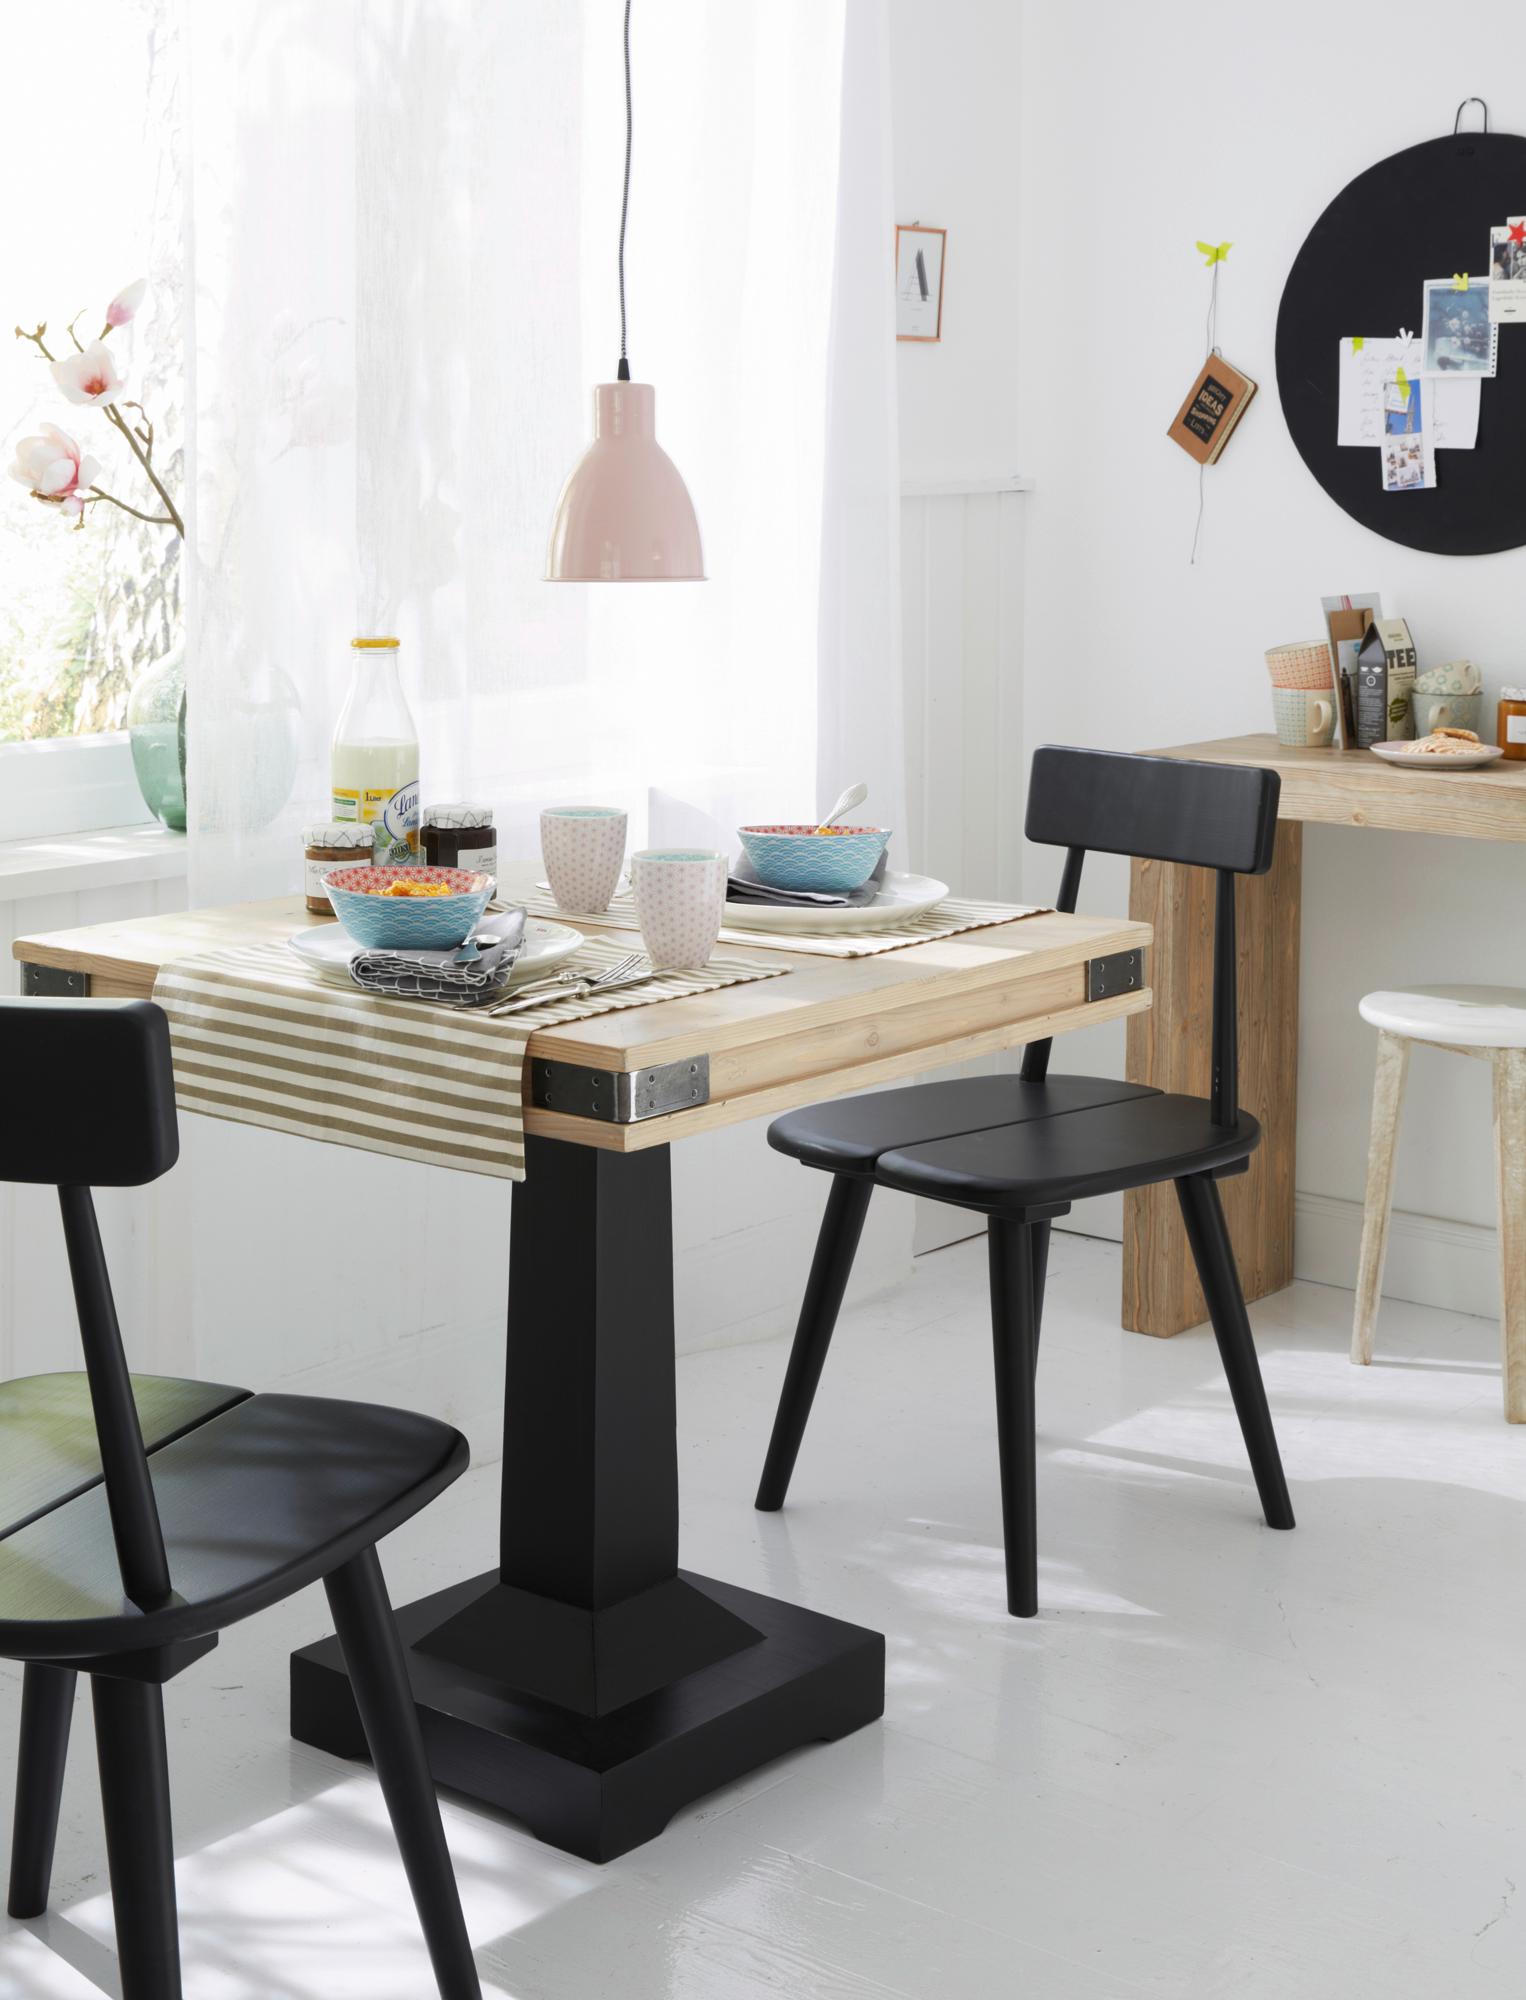 Bistrotisch mit Tischplatte aus Holz #stuhl #esstisch #sitzecke #essecke ©Car Selbstbaumöbel